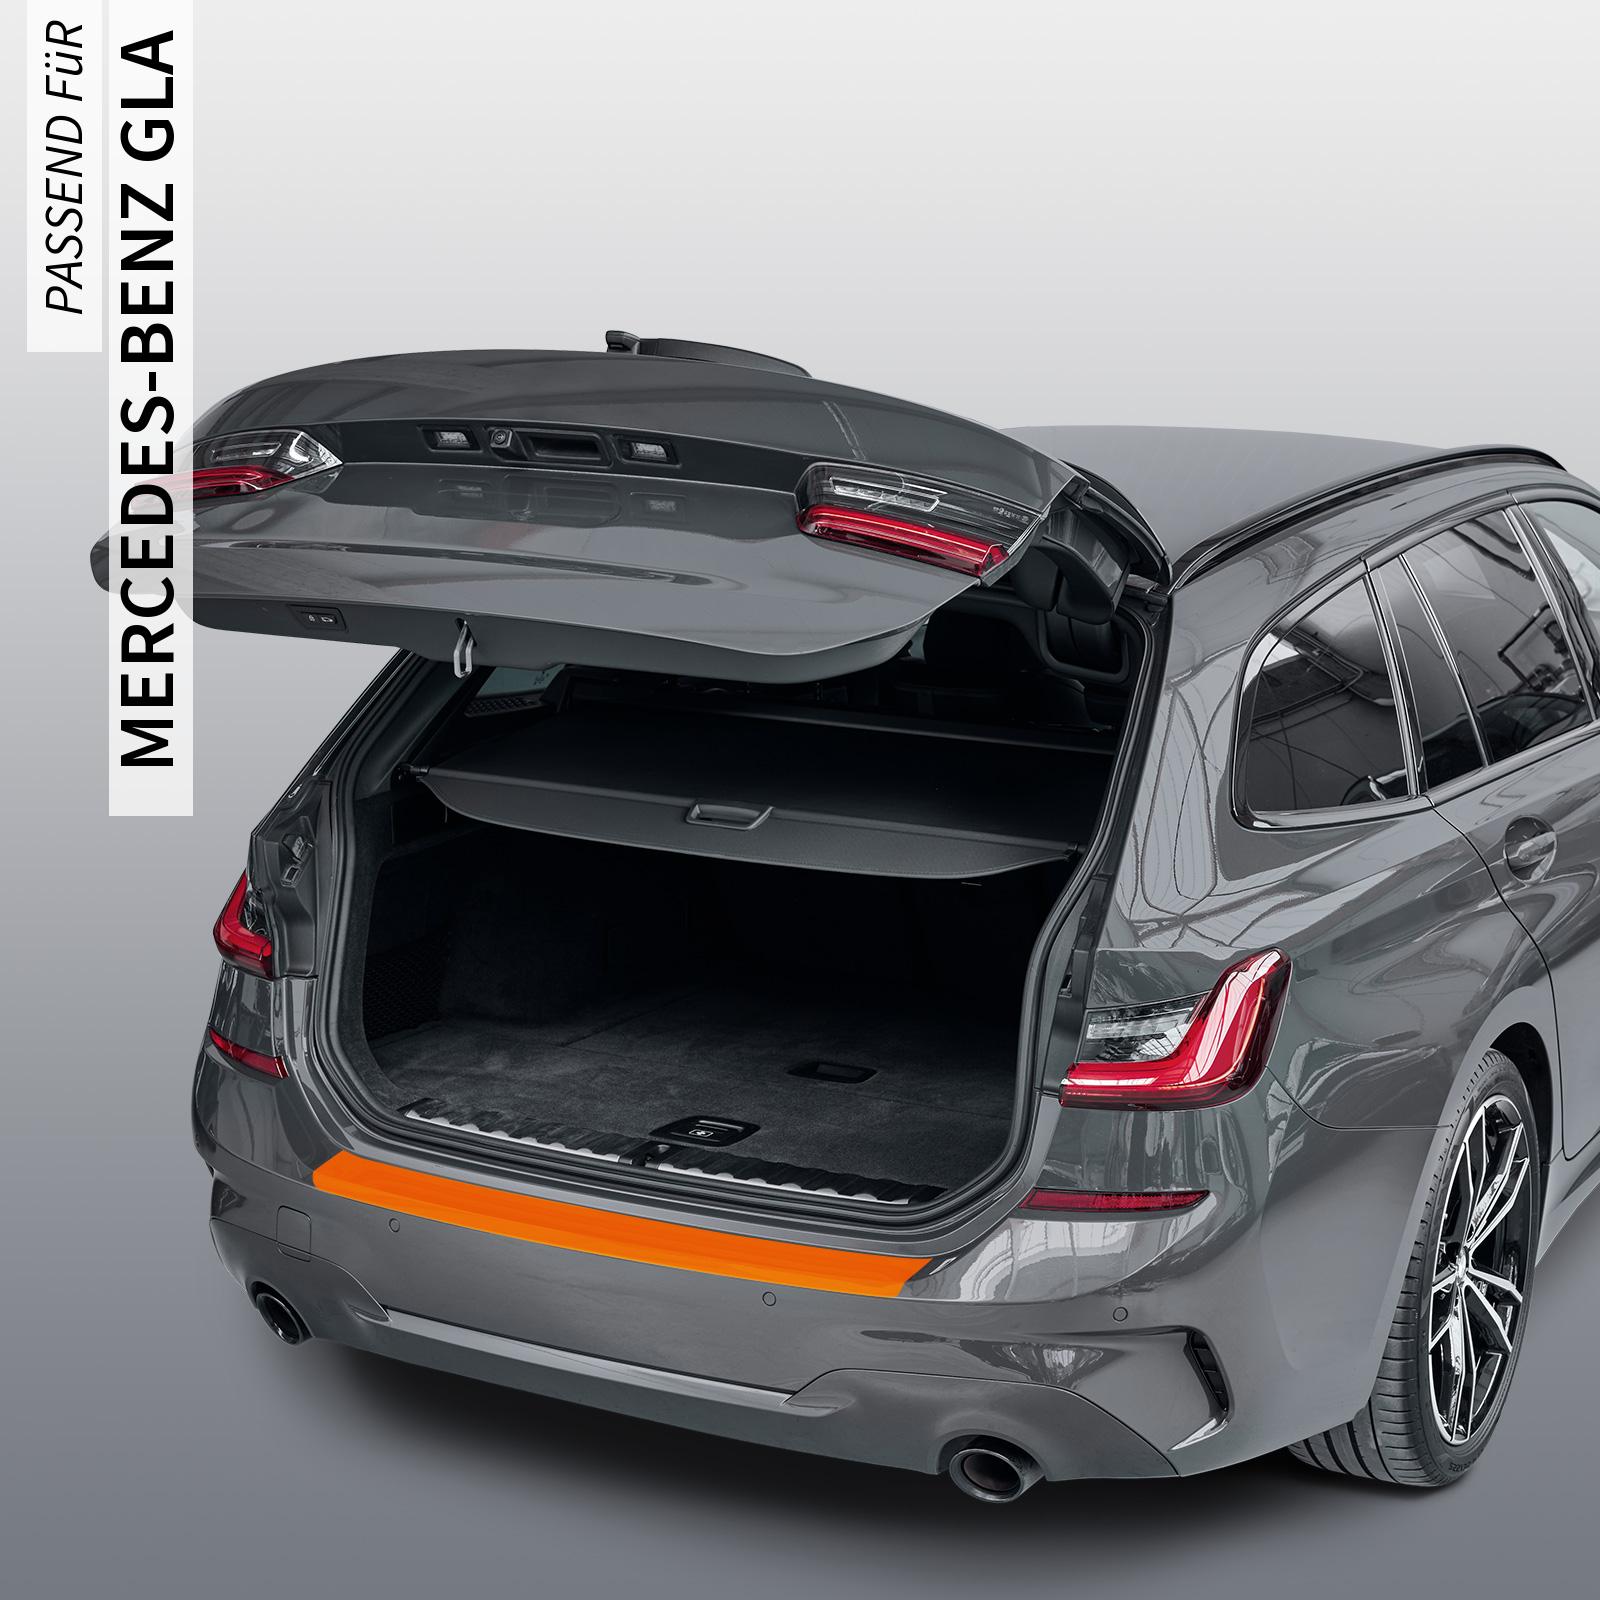 Ladekantenschutzfolie - Transparent Glatt MATT 110 µm stark  für Mercedes-Benz GLA Typ H247, ab BJ 03/2020